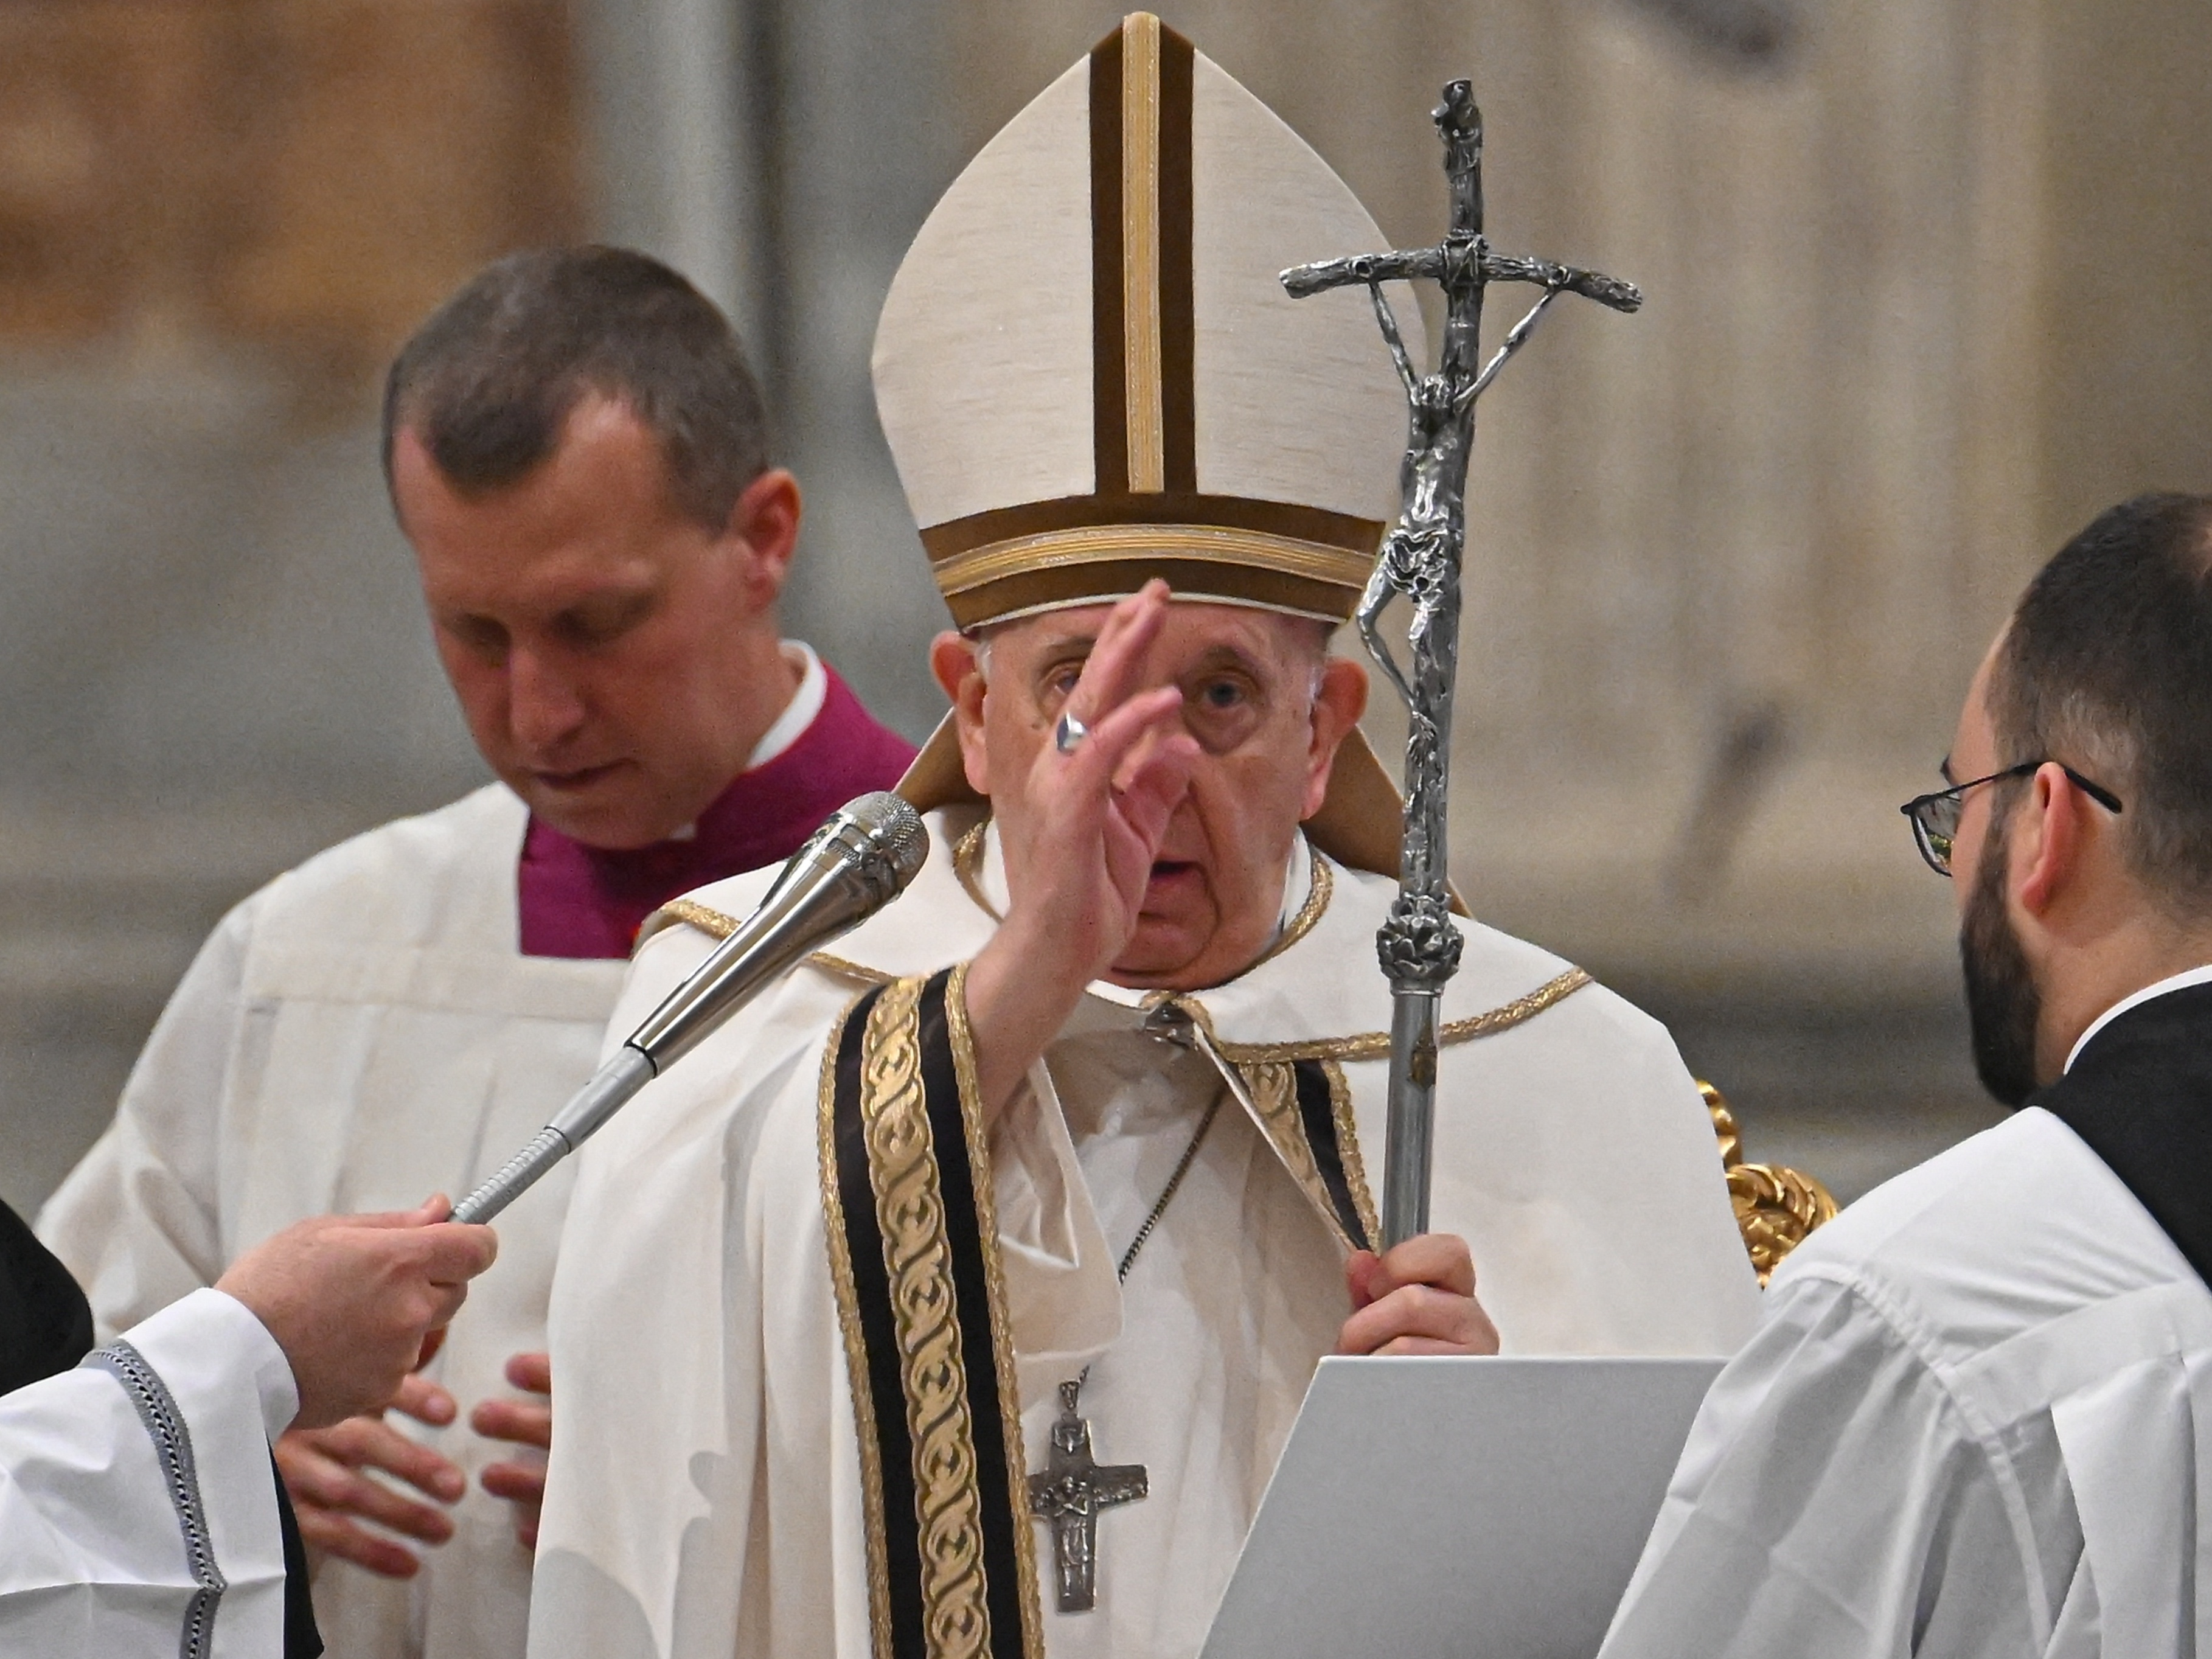 Novo bispo do Crato nomeado pelo Papa Francisco nesta quarta-feira, 12